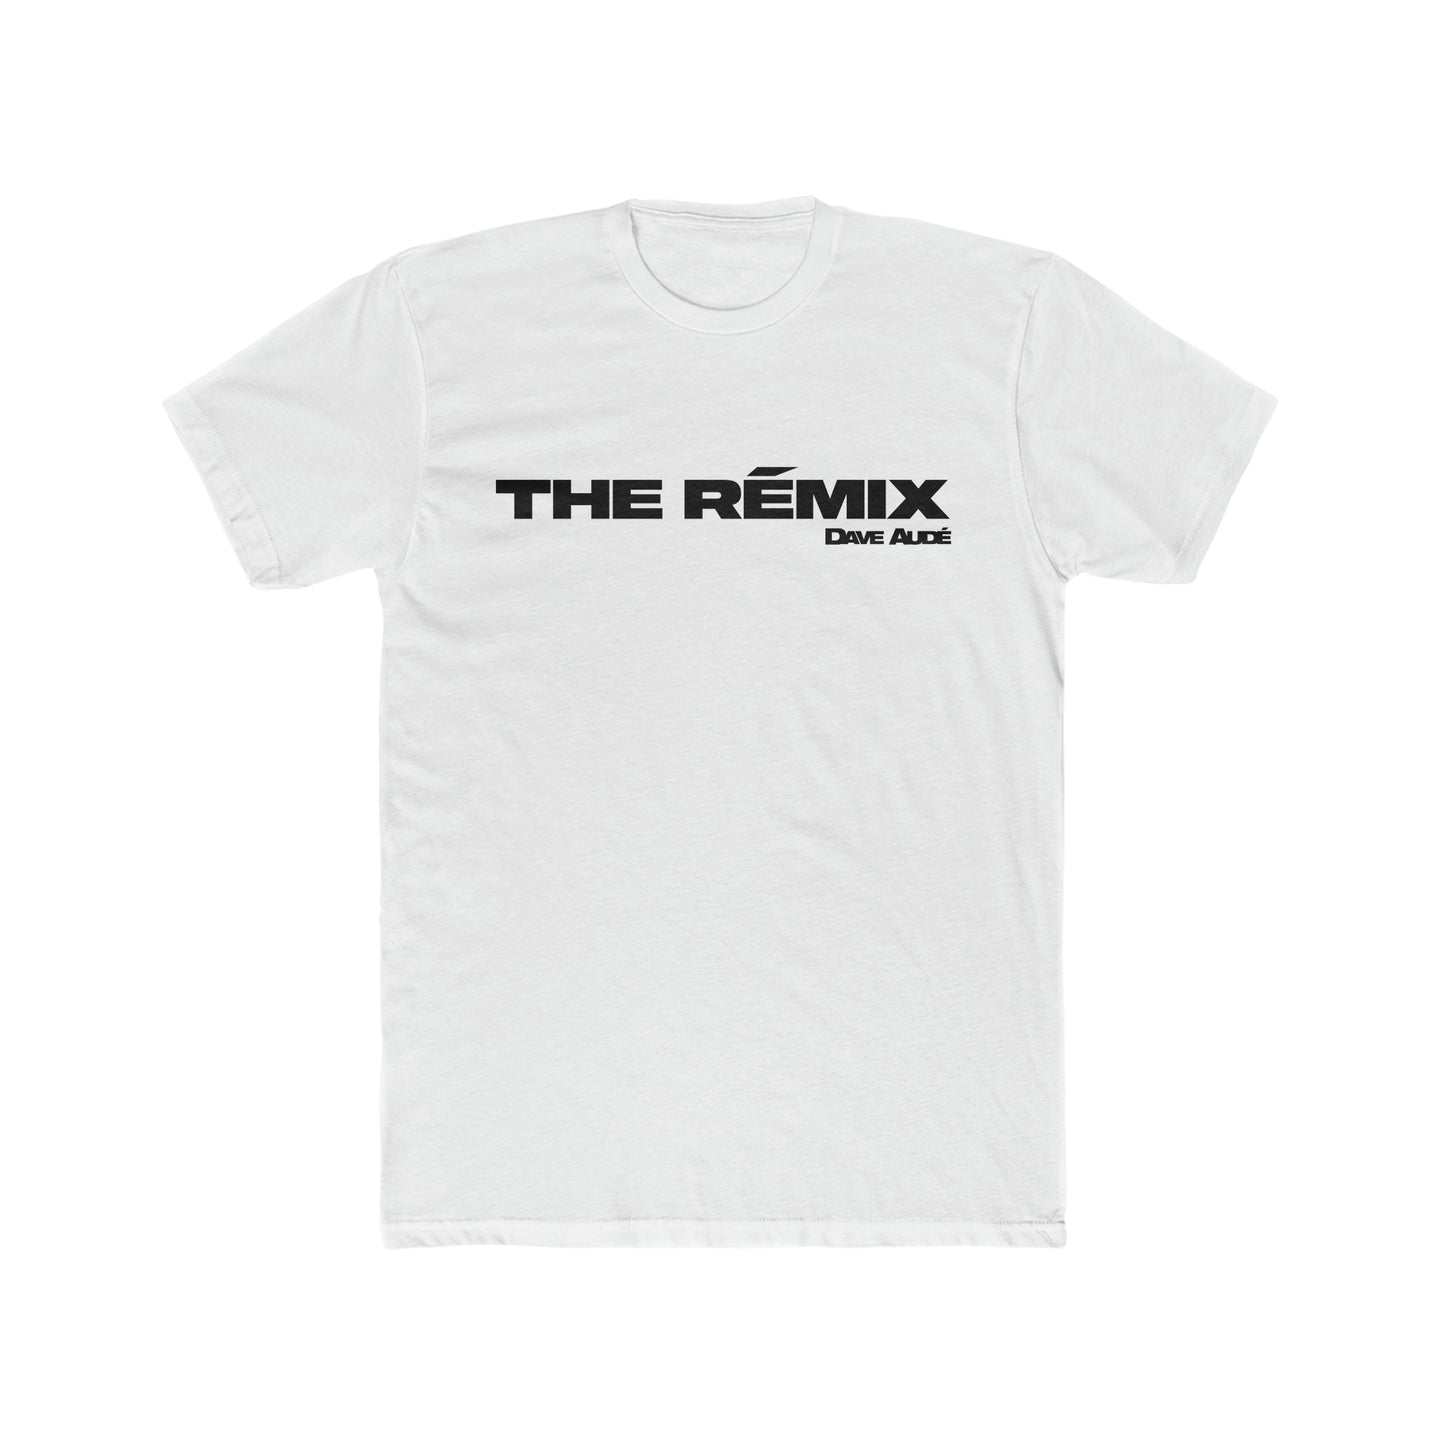 THE RÉMIX - by Dave Audé (Black on White) Men's Cotton Crew Tee